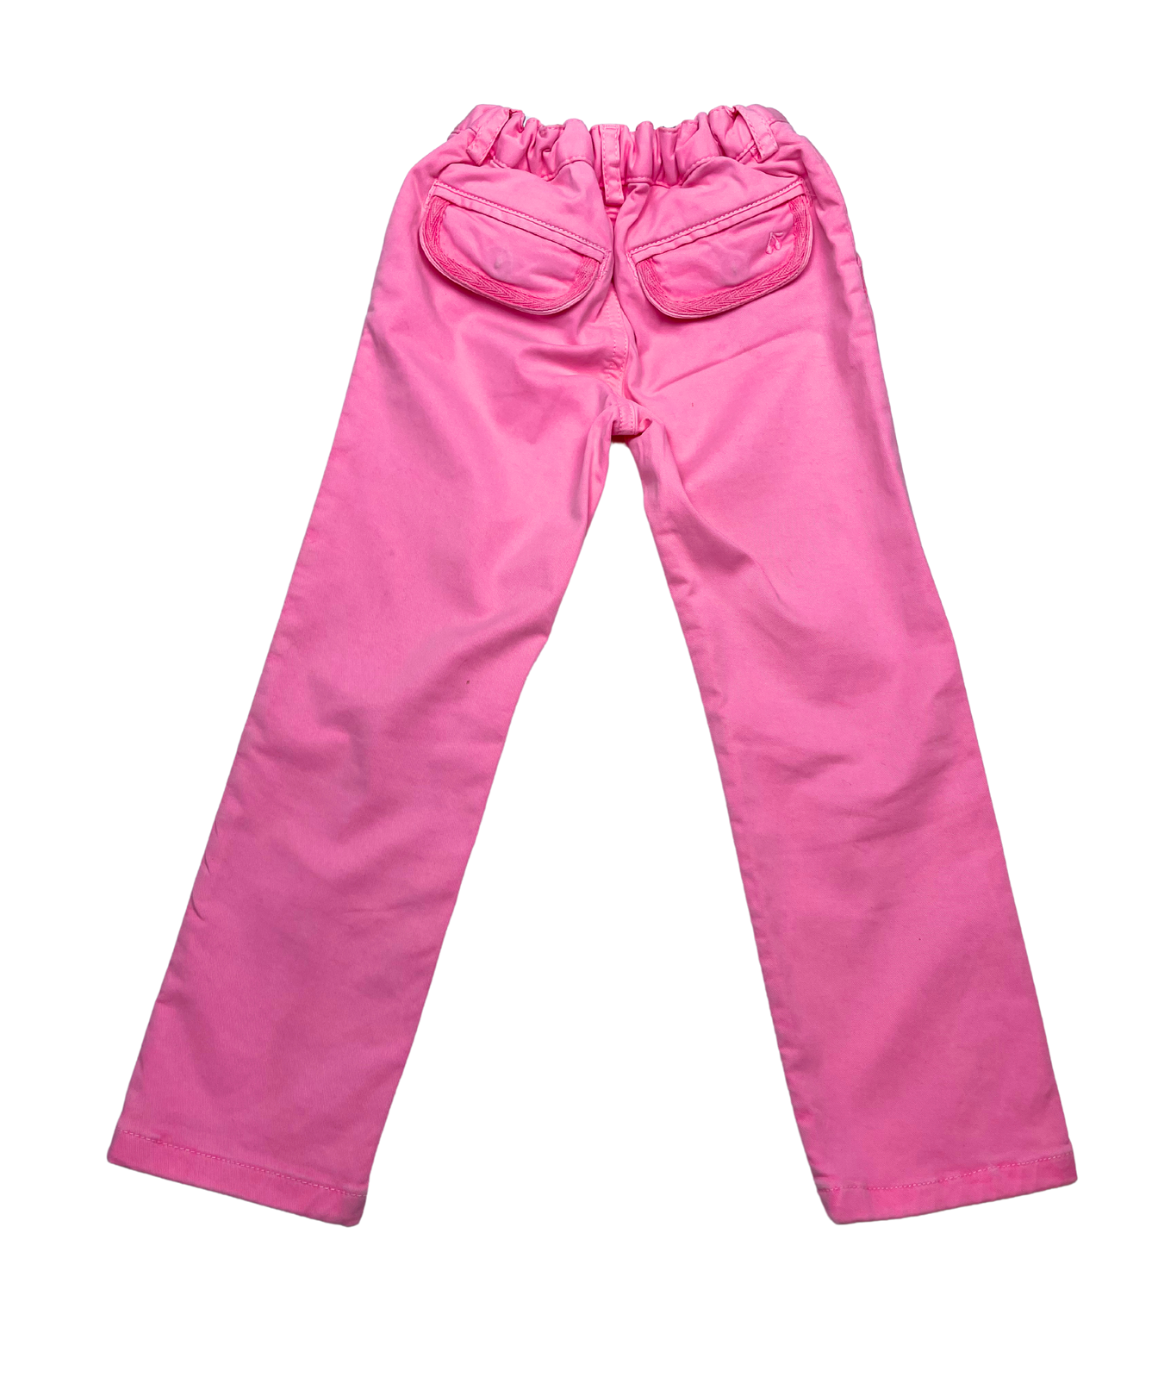 BONPOINT - Pantalon rose vif élastiqué - 4 ans